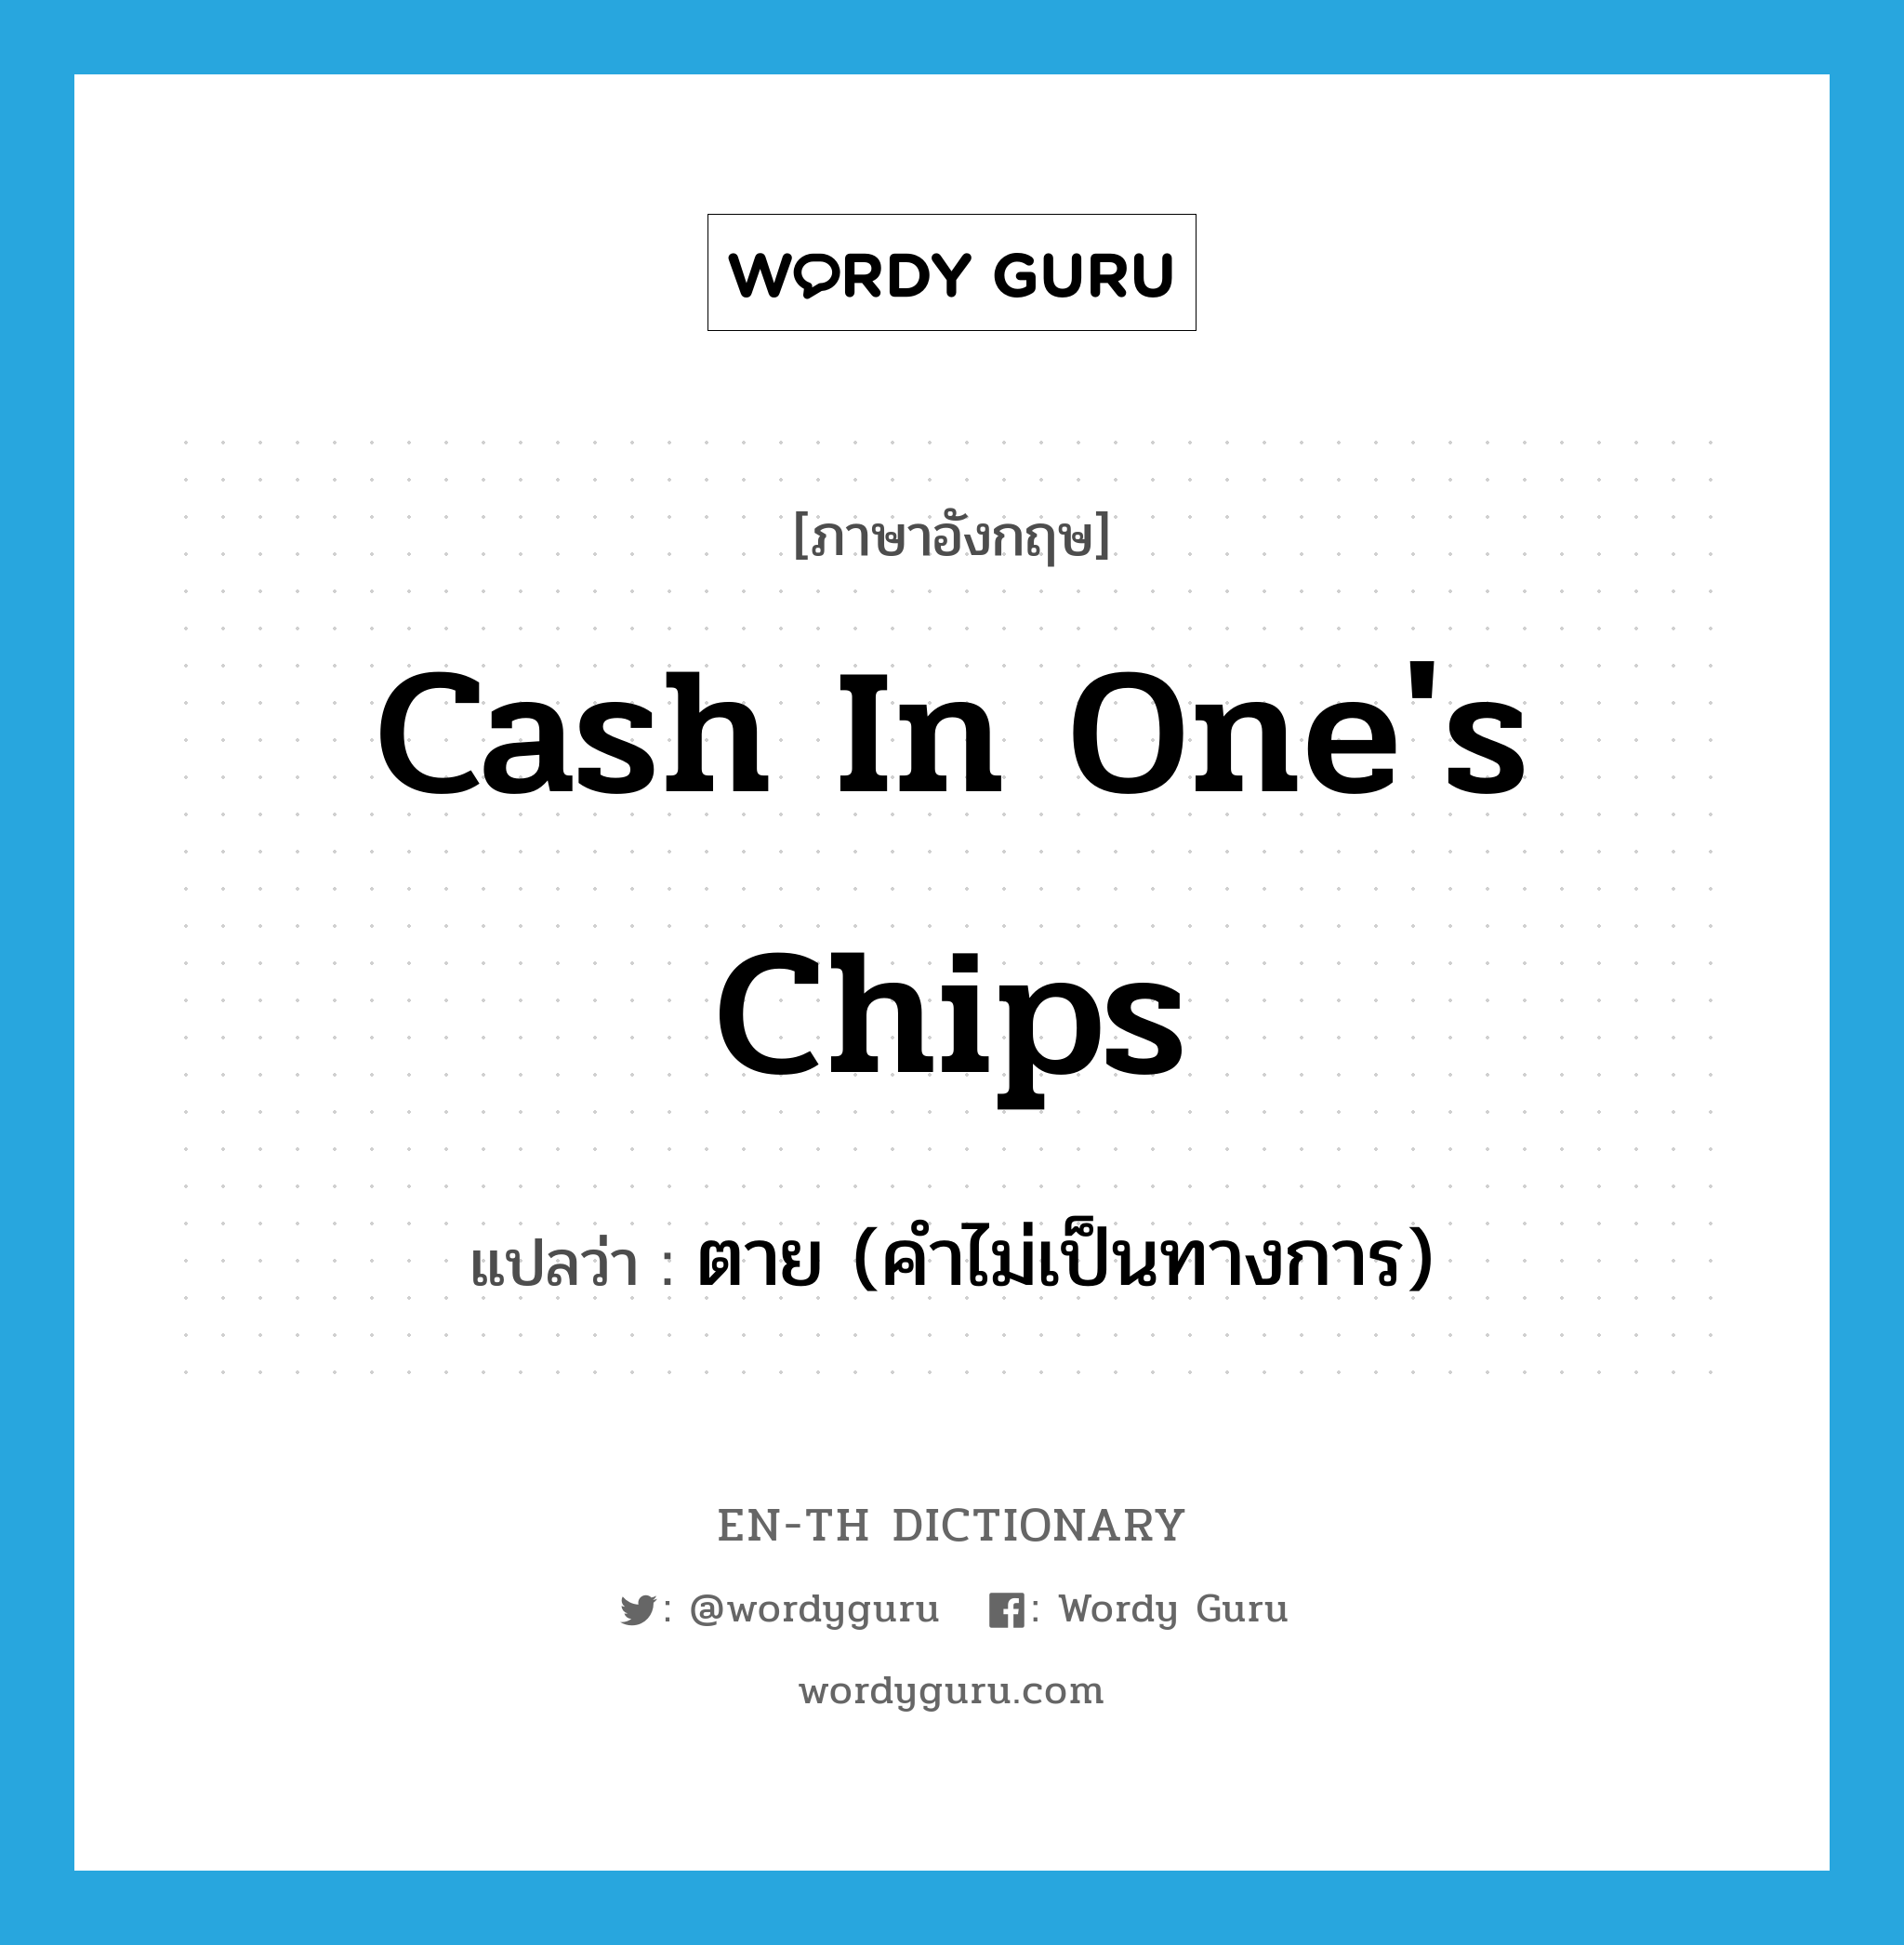 ตาย (คำไม่เป็นทางการ) ภาษาอังกฤษ?, คำศัพท์ภาษาอังกฤษ ตาย (คำไม่เป็นทางการ) แปลว่า cash in one's chips ประเภท SL หมวด SL